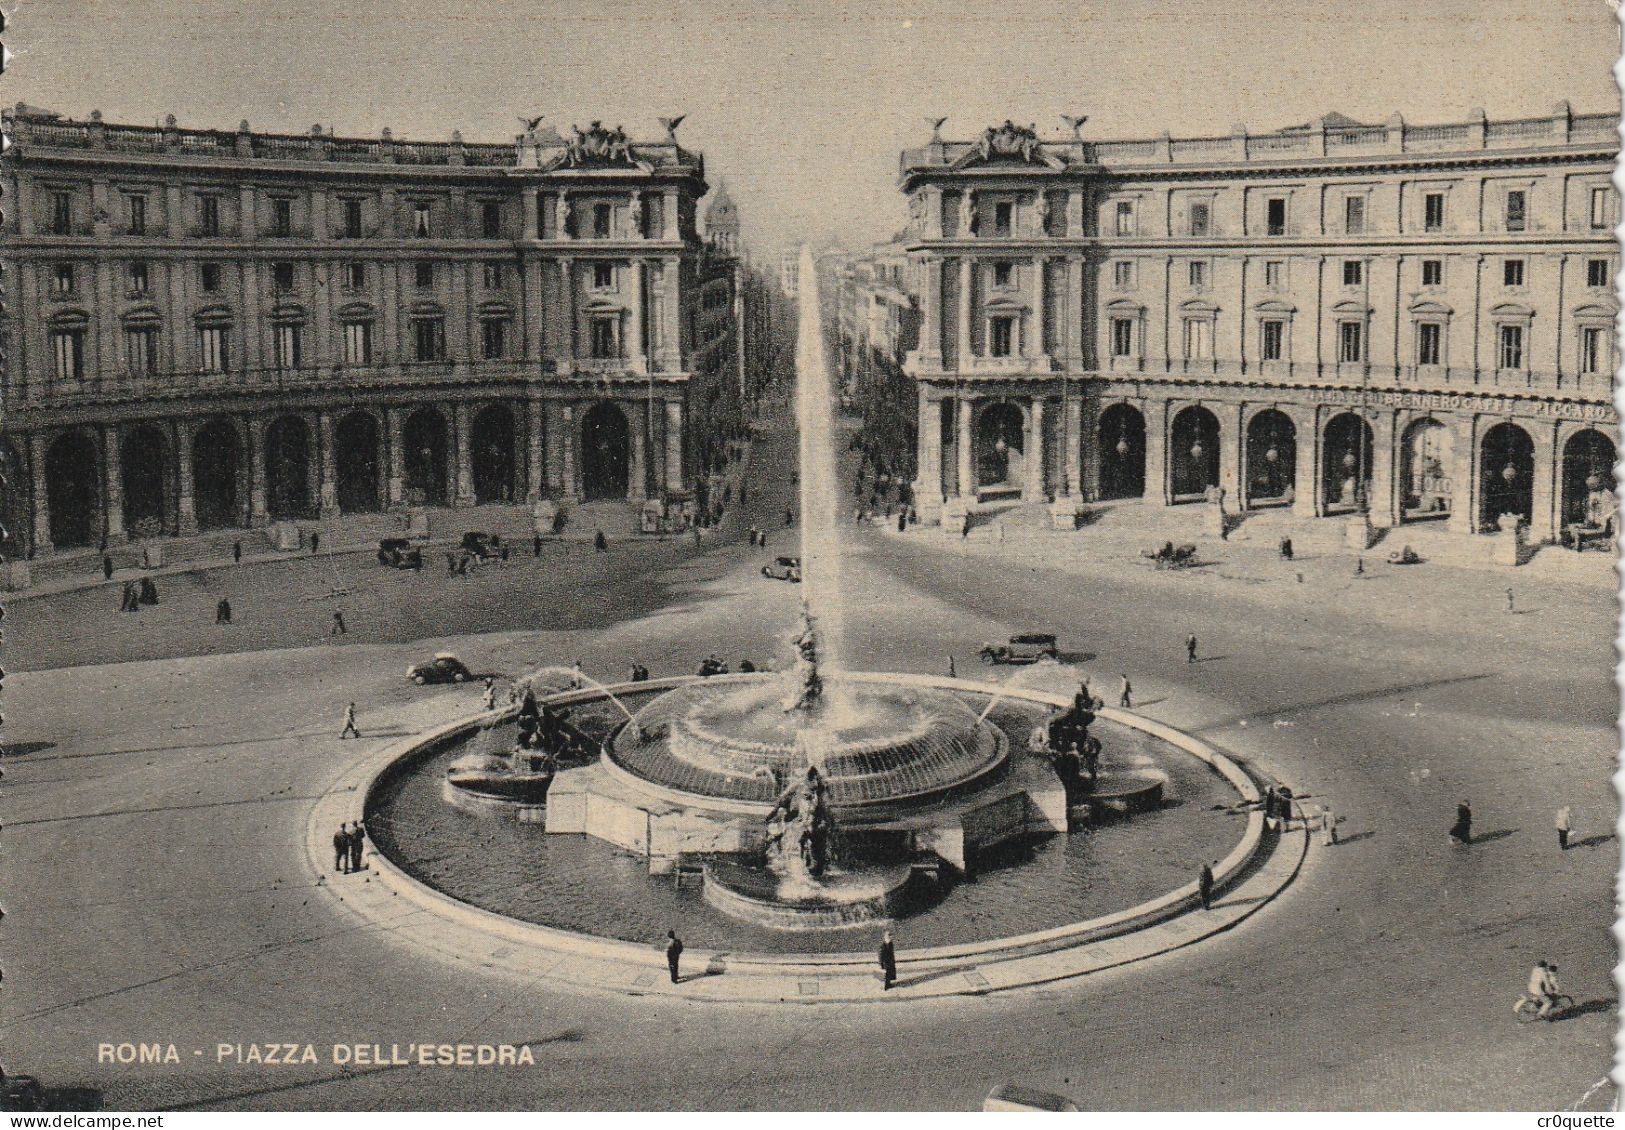 # ITALIE - ROME - ROMA / PANORAMAS et MONUMENTS vers 1950 en 32 CARTES POSTALES en NOIR et BLANC